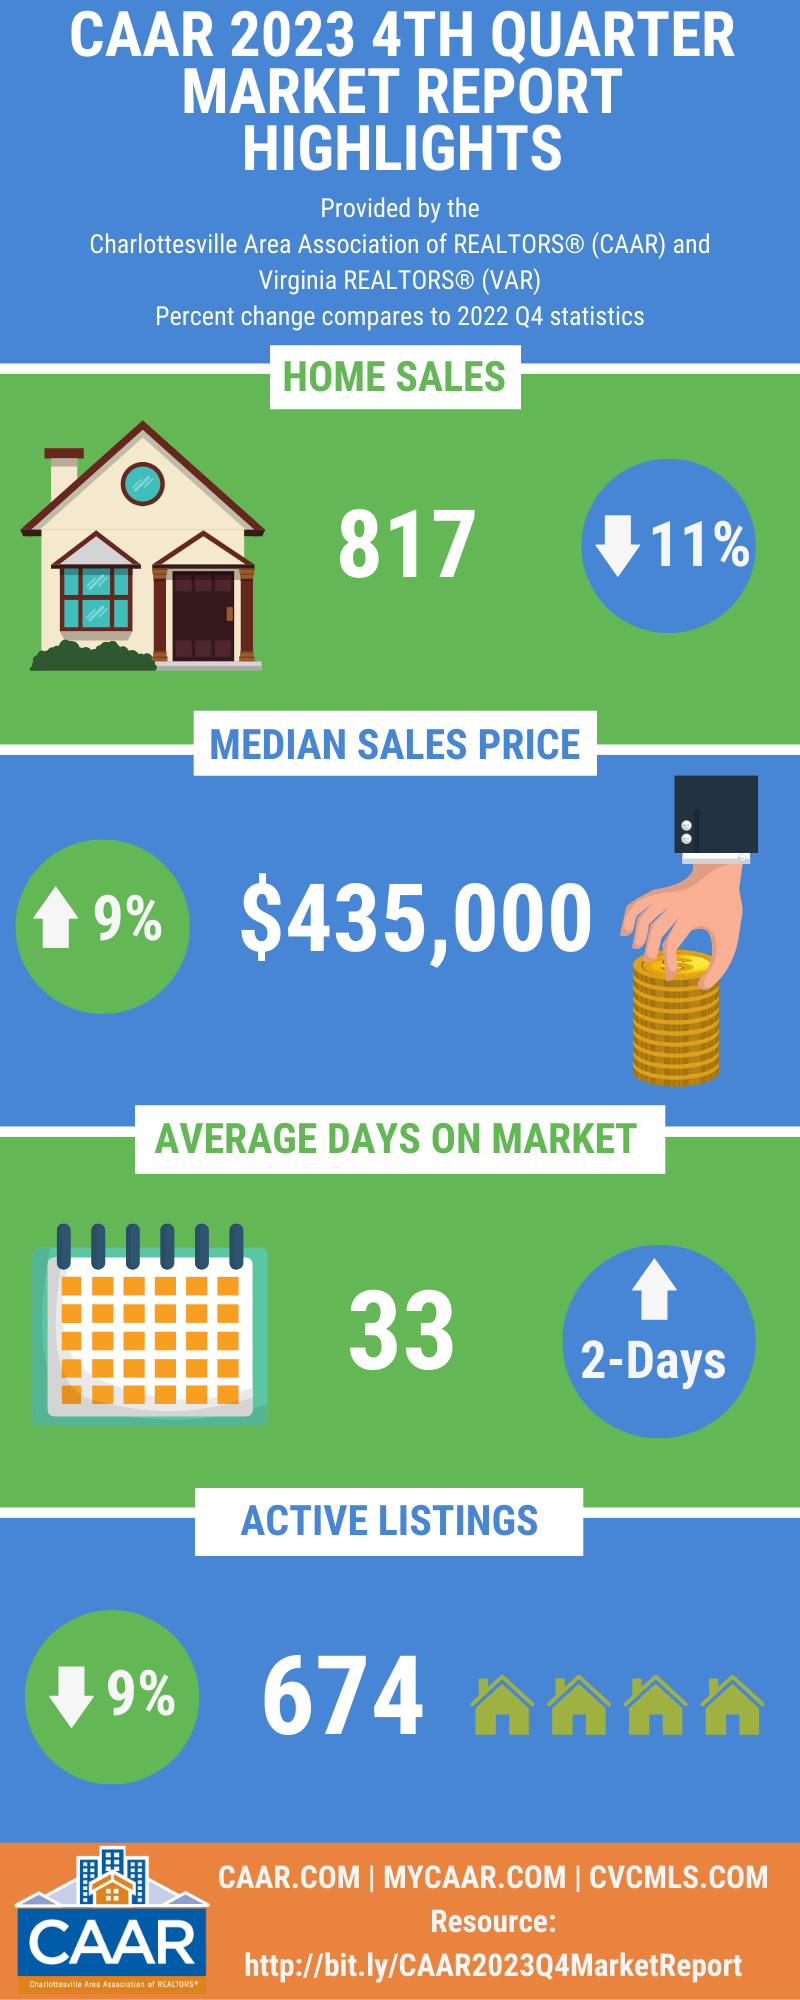 CAAR 2023 Q4 Market Report Infographic